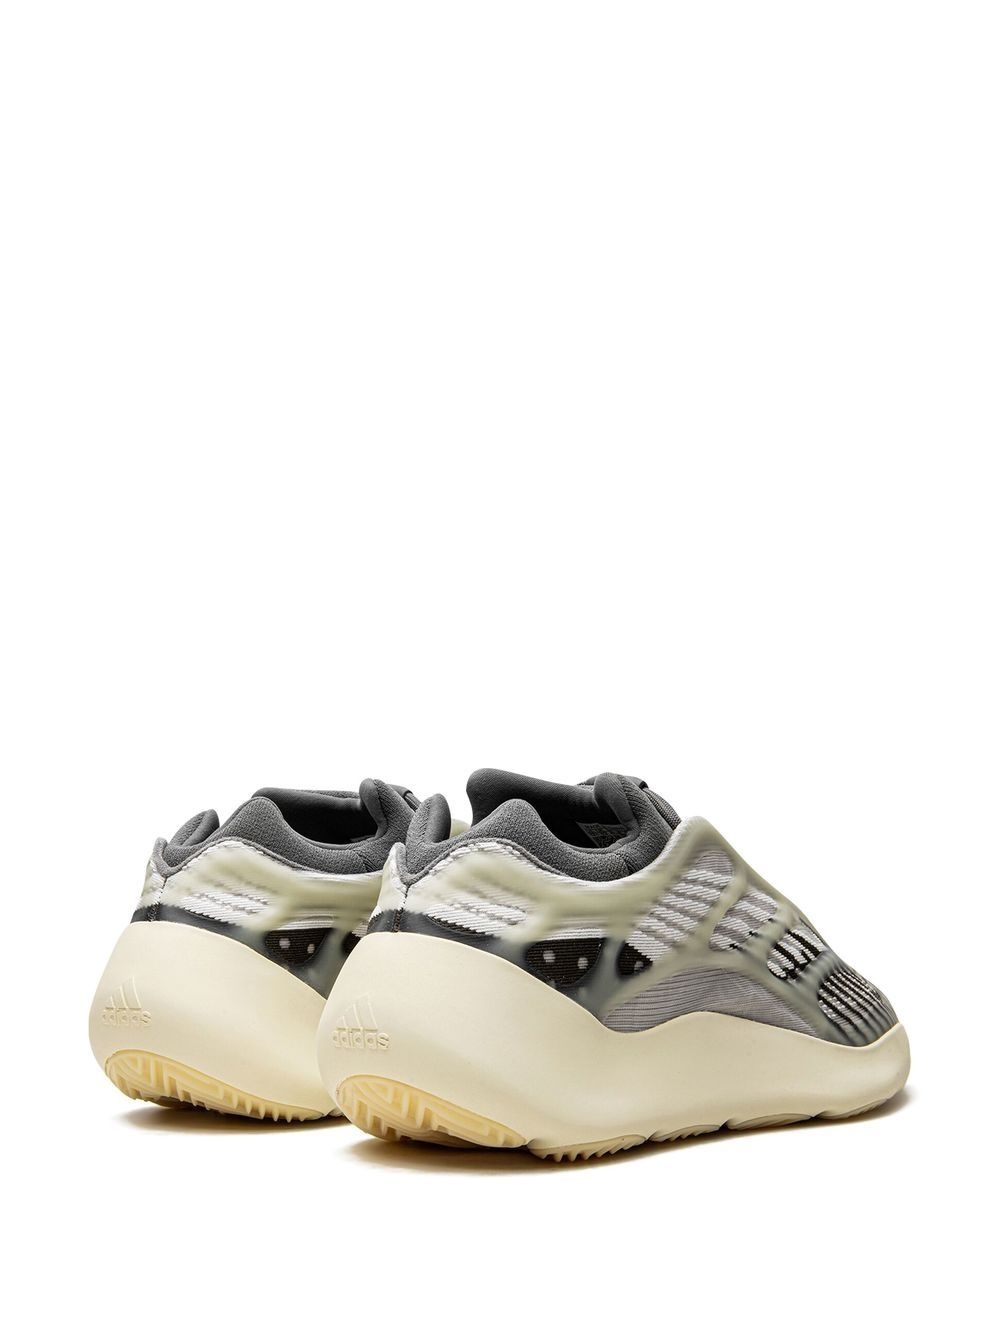 Yeezy 700 V3 "Fade Salt" sneakers - 3